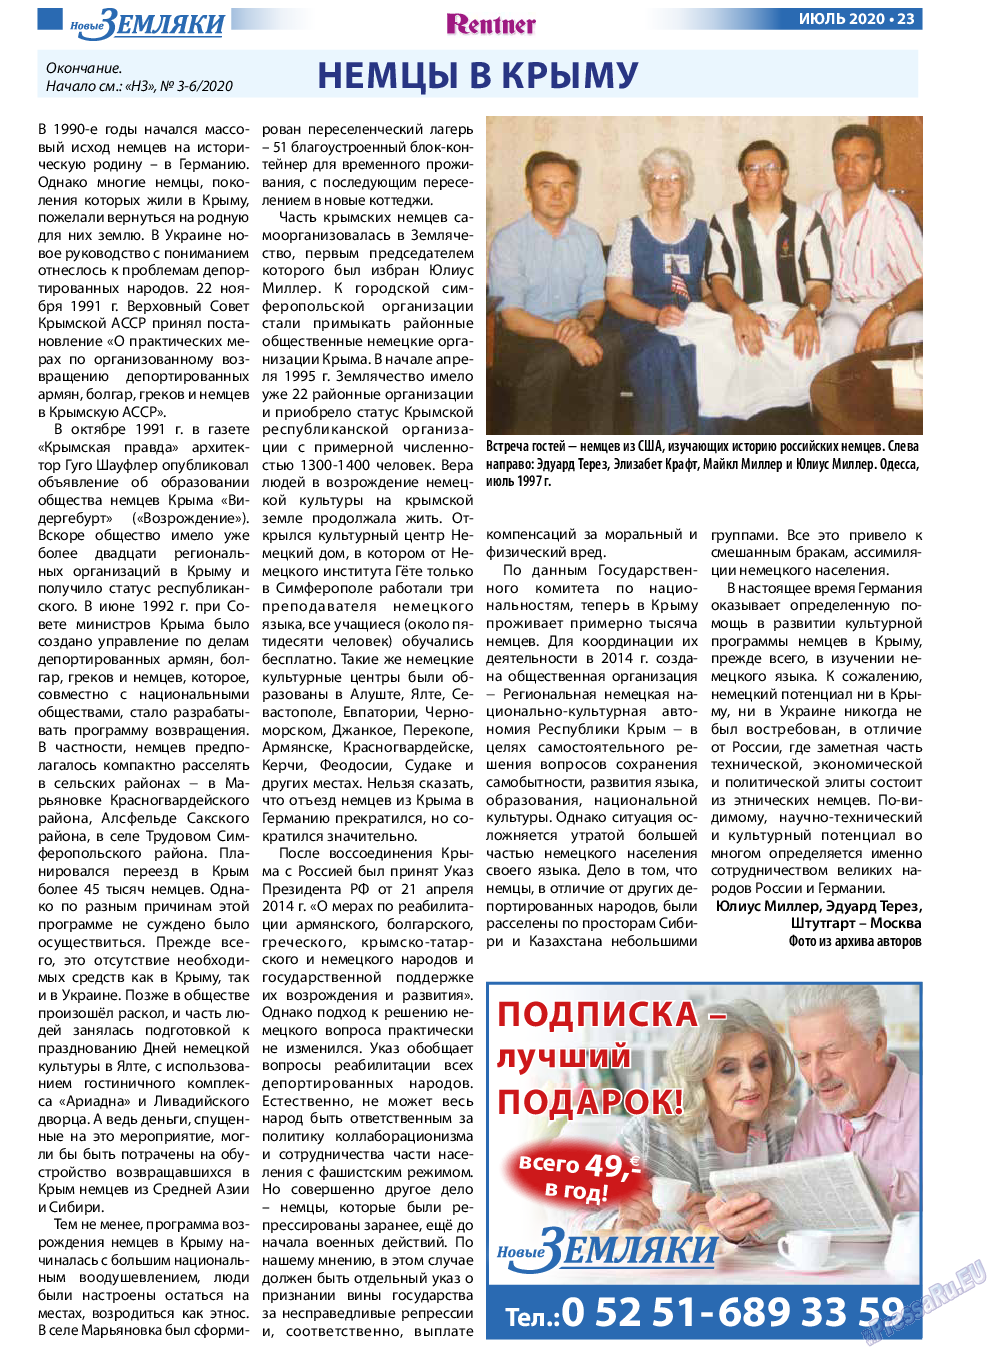 Новые Земляки, газета. 2020 №7 стр.23